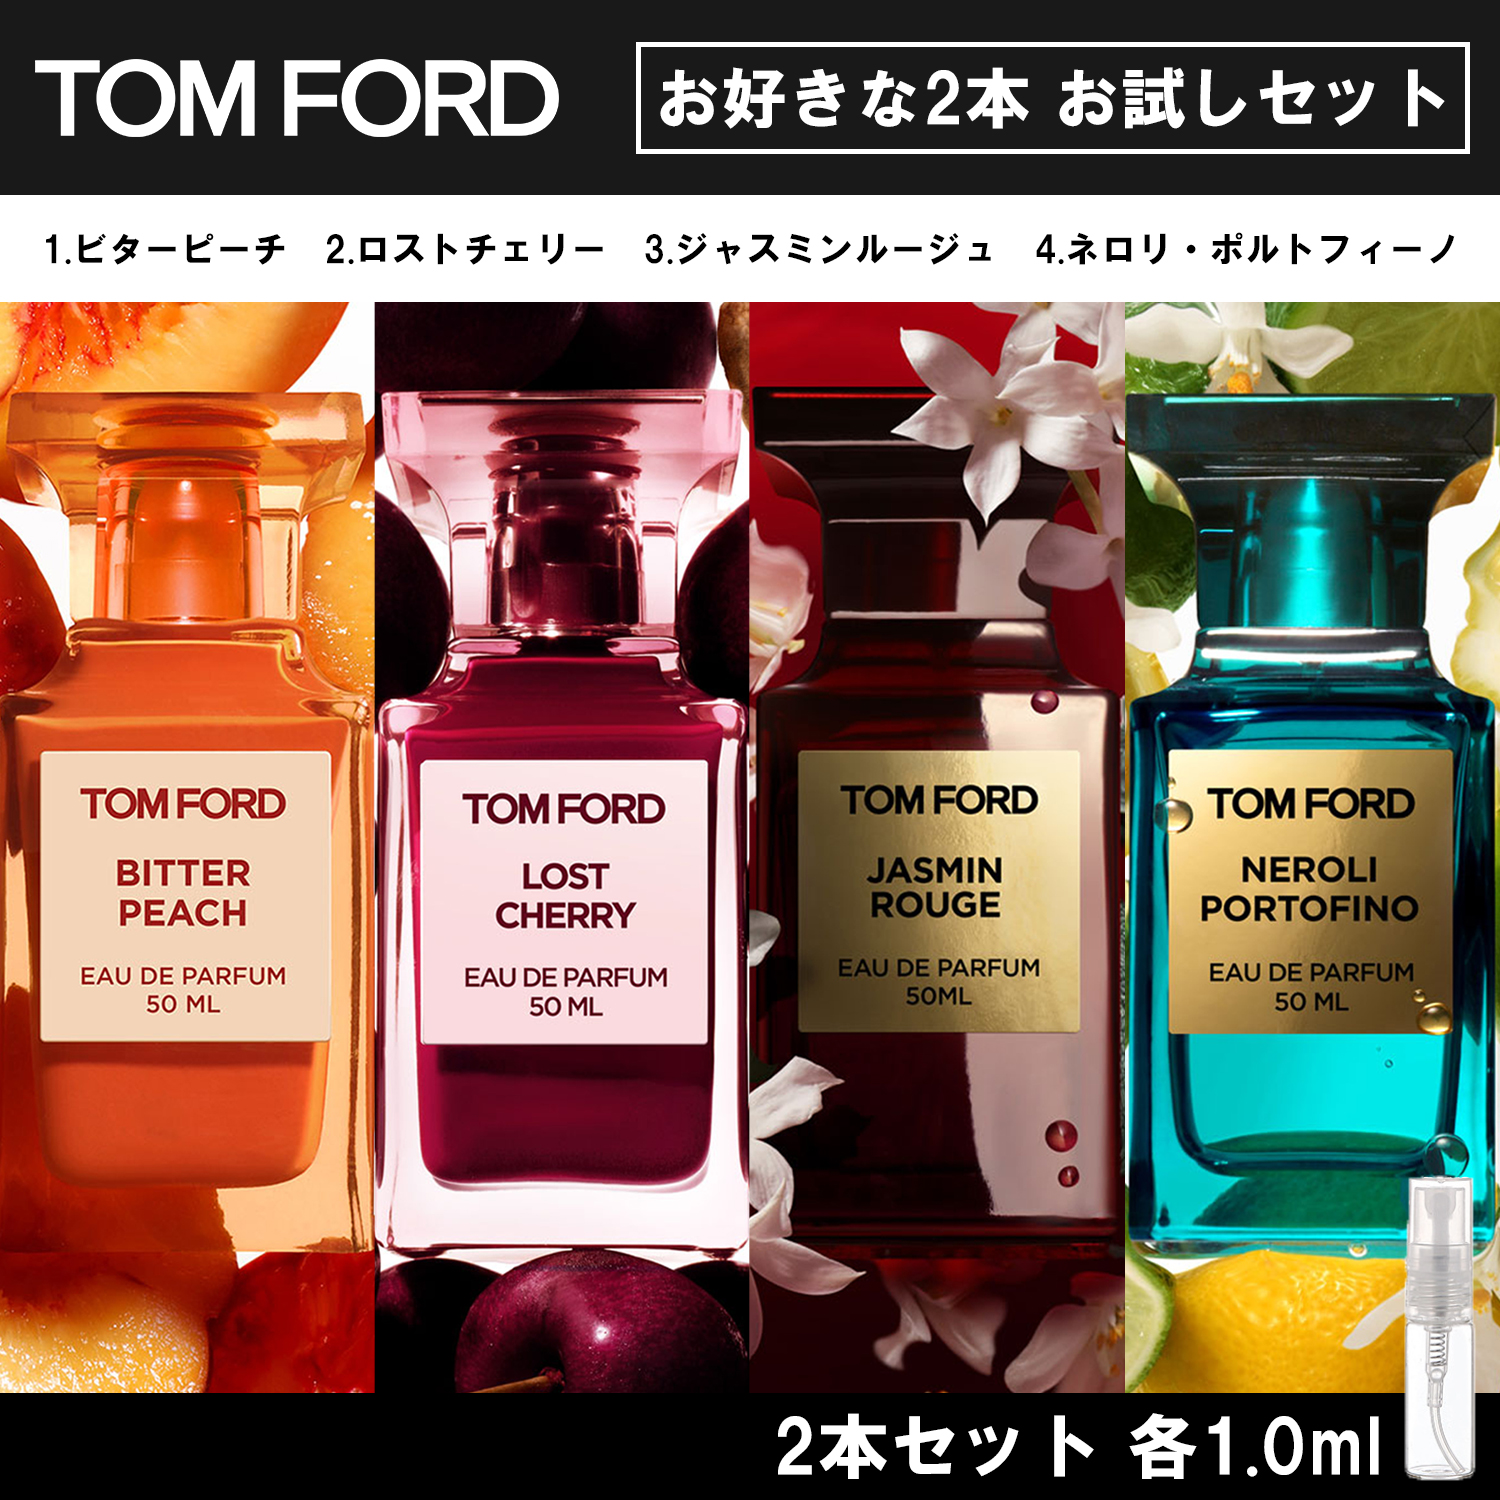 TOMFORD トムフォード 香水 お試し 1ml 選べる 2本セット 人気